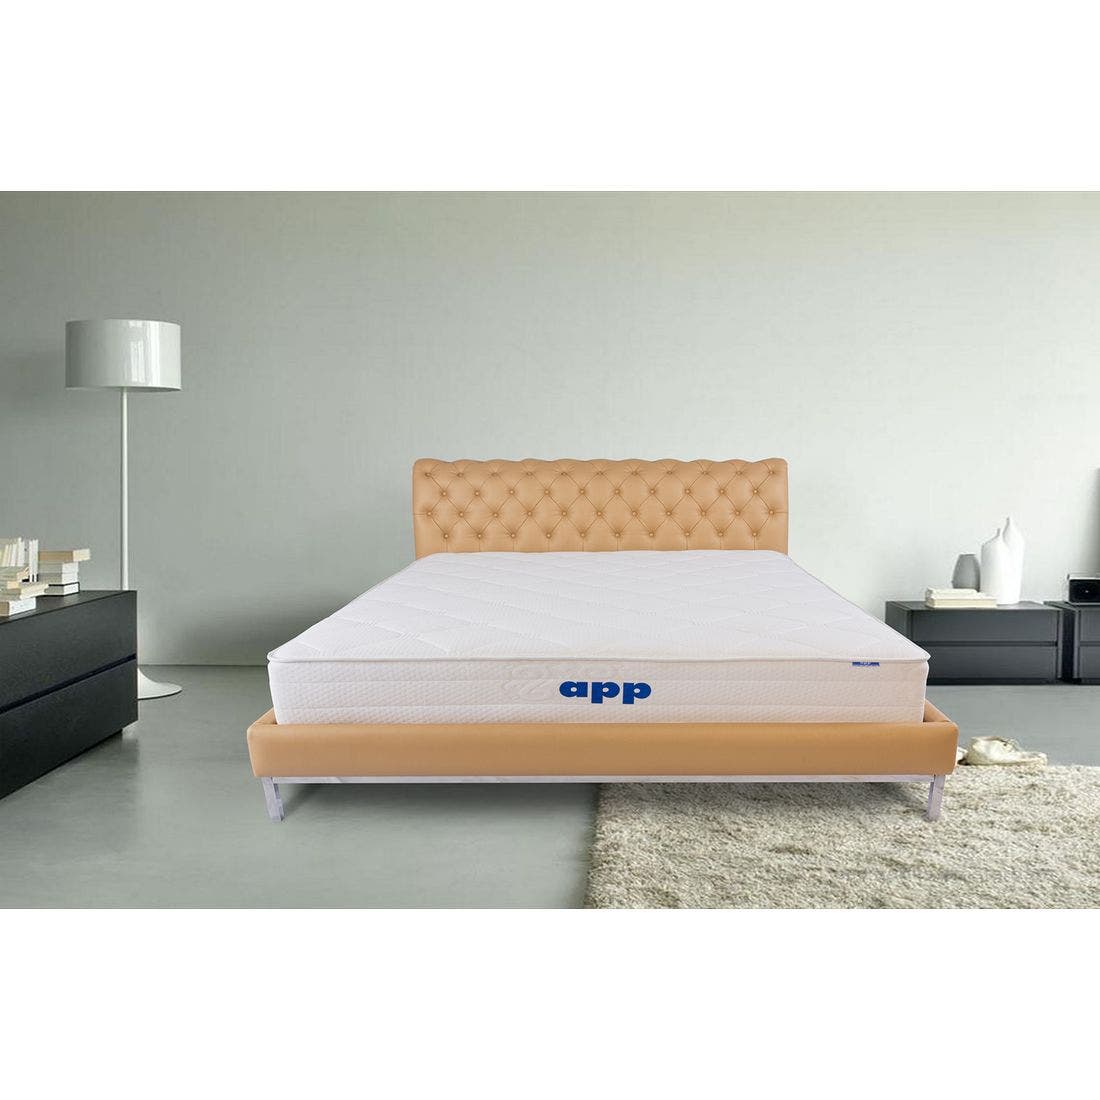 39015075-mattress-bedding-mattresses-pocket-spring-mattress-31